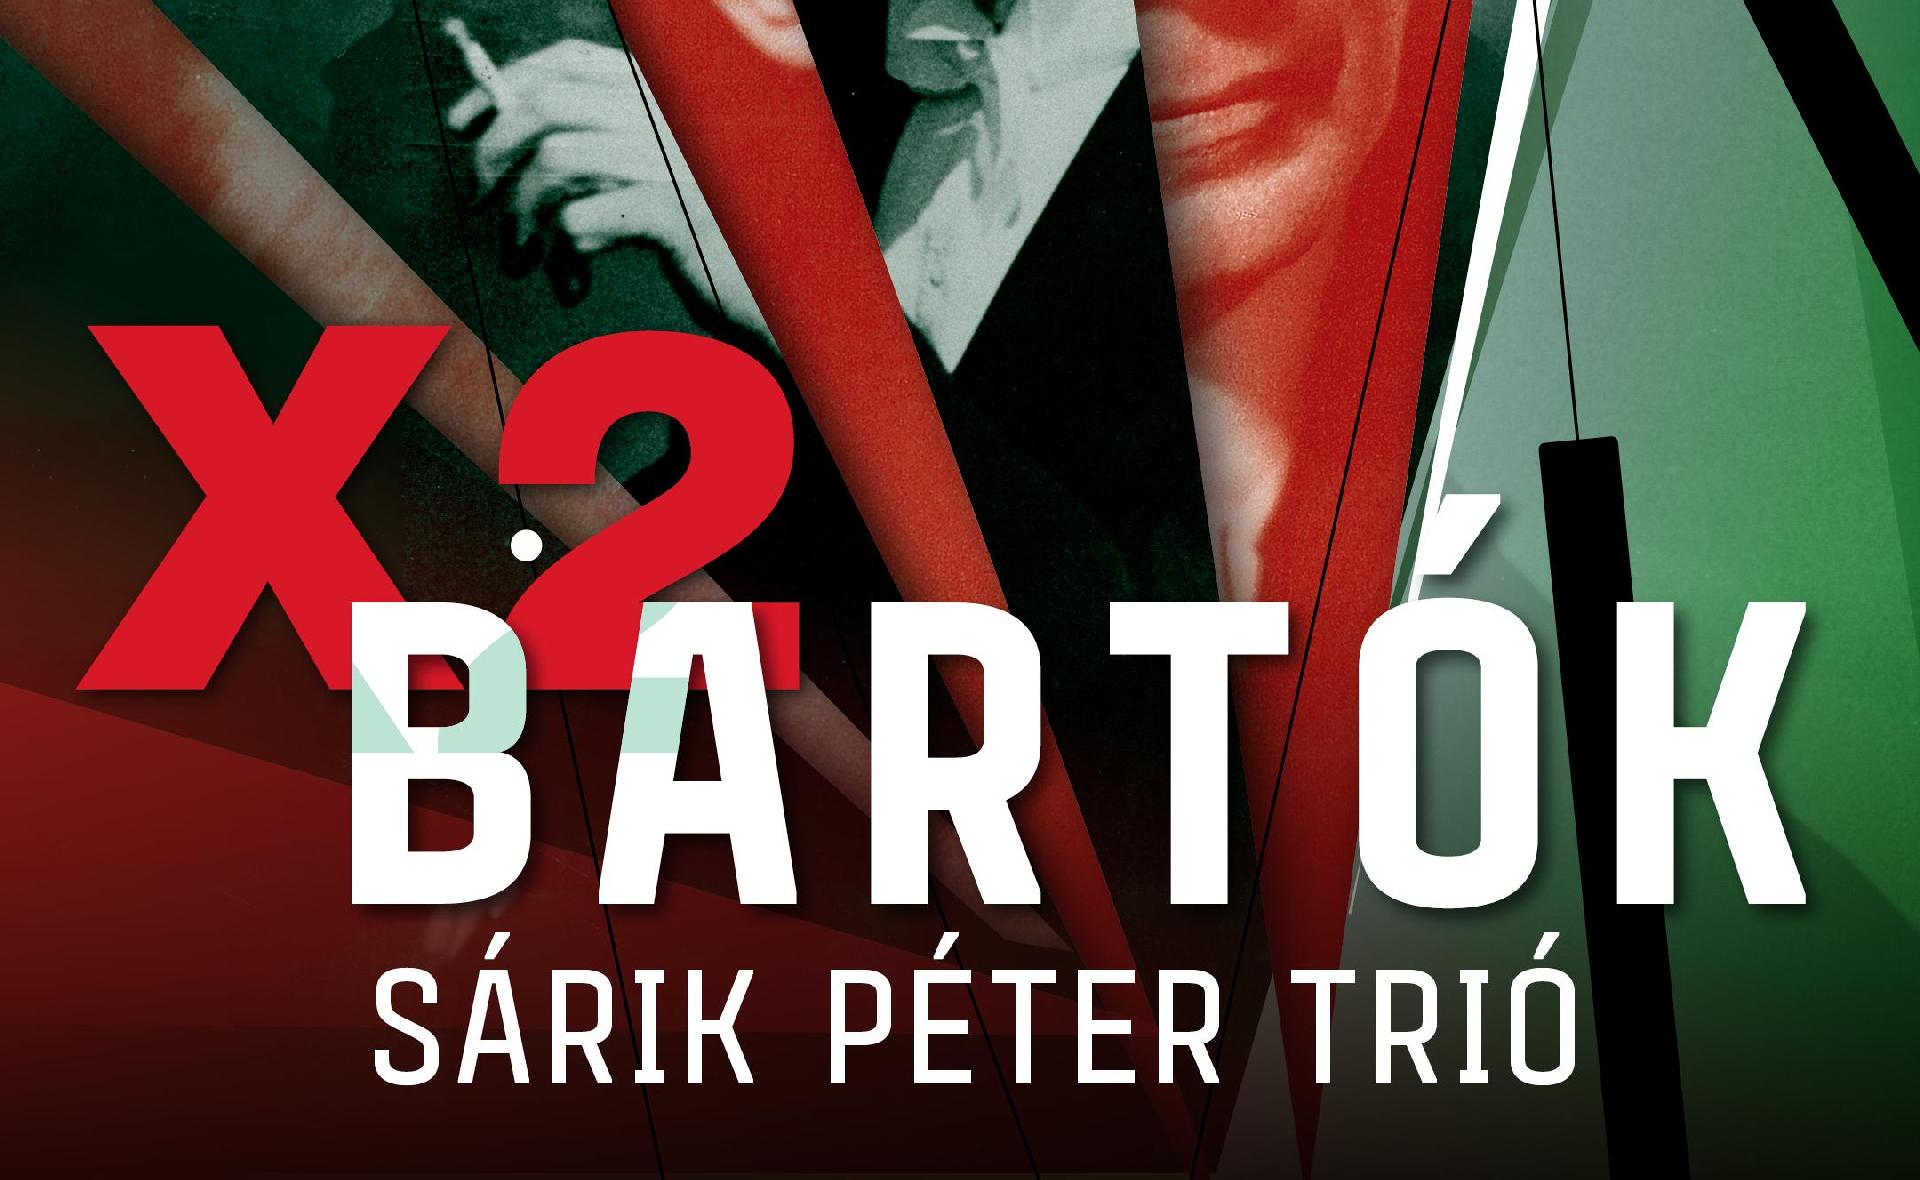 SÁRIK PÉTER TRIÓ: X2 BARTÓK – Jazz concert 